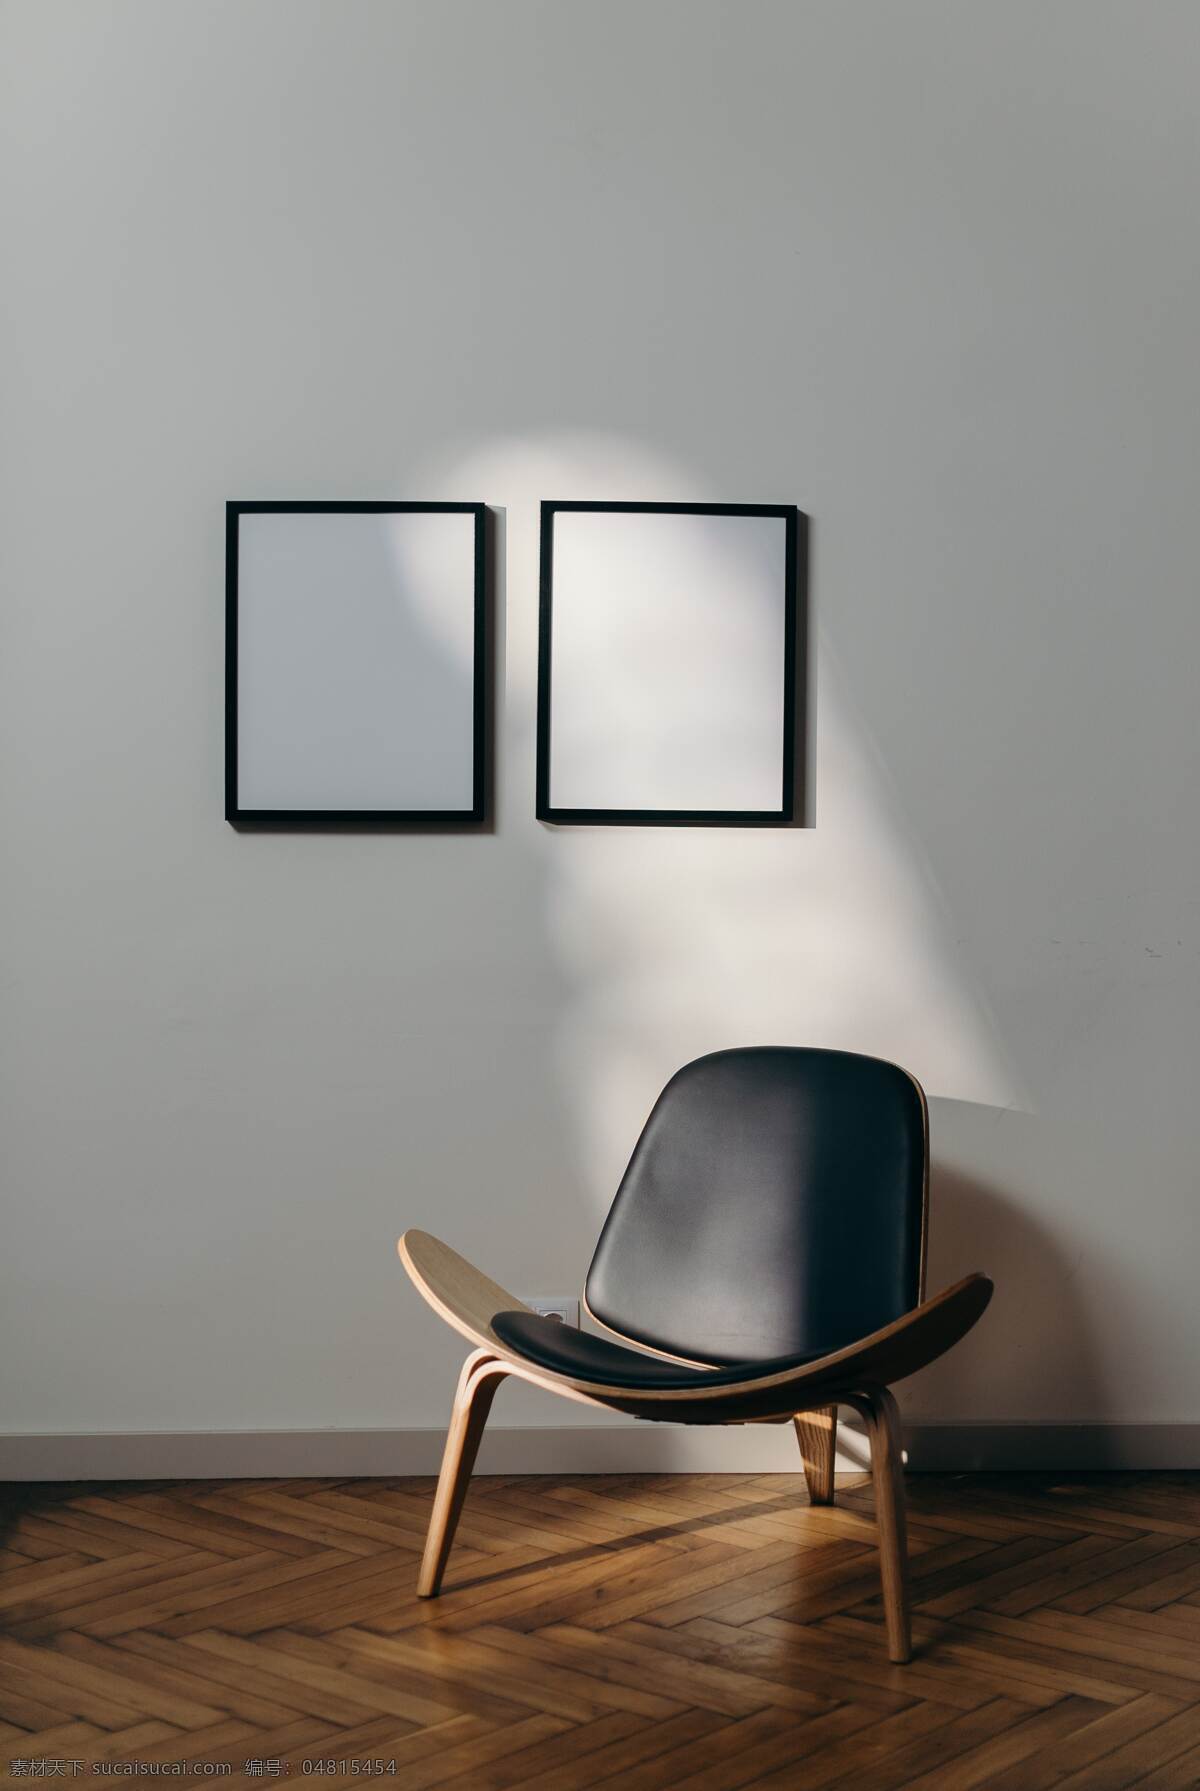 唯美 创意 室内 背景 阳光 场景 椅子 家具 画 欧式 现代 木 建筑园林 室内摄影